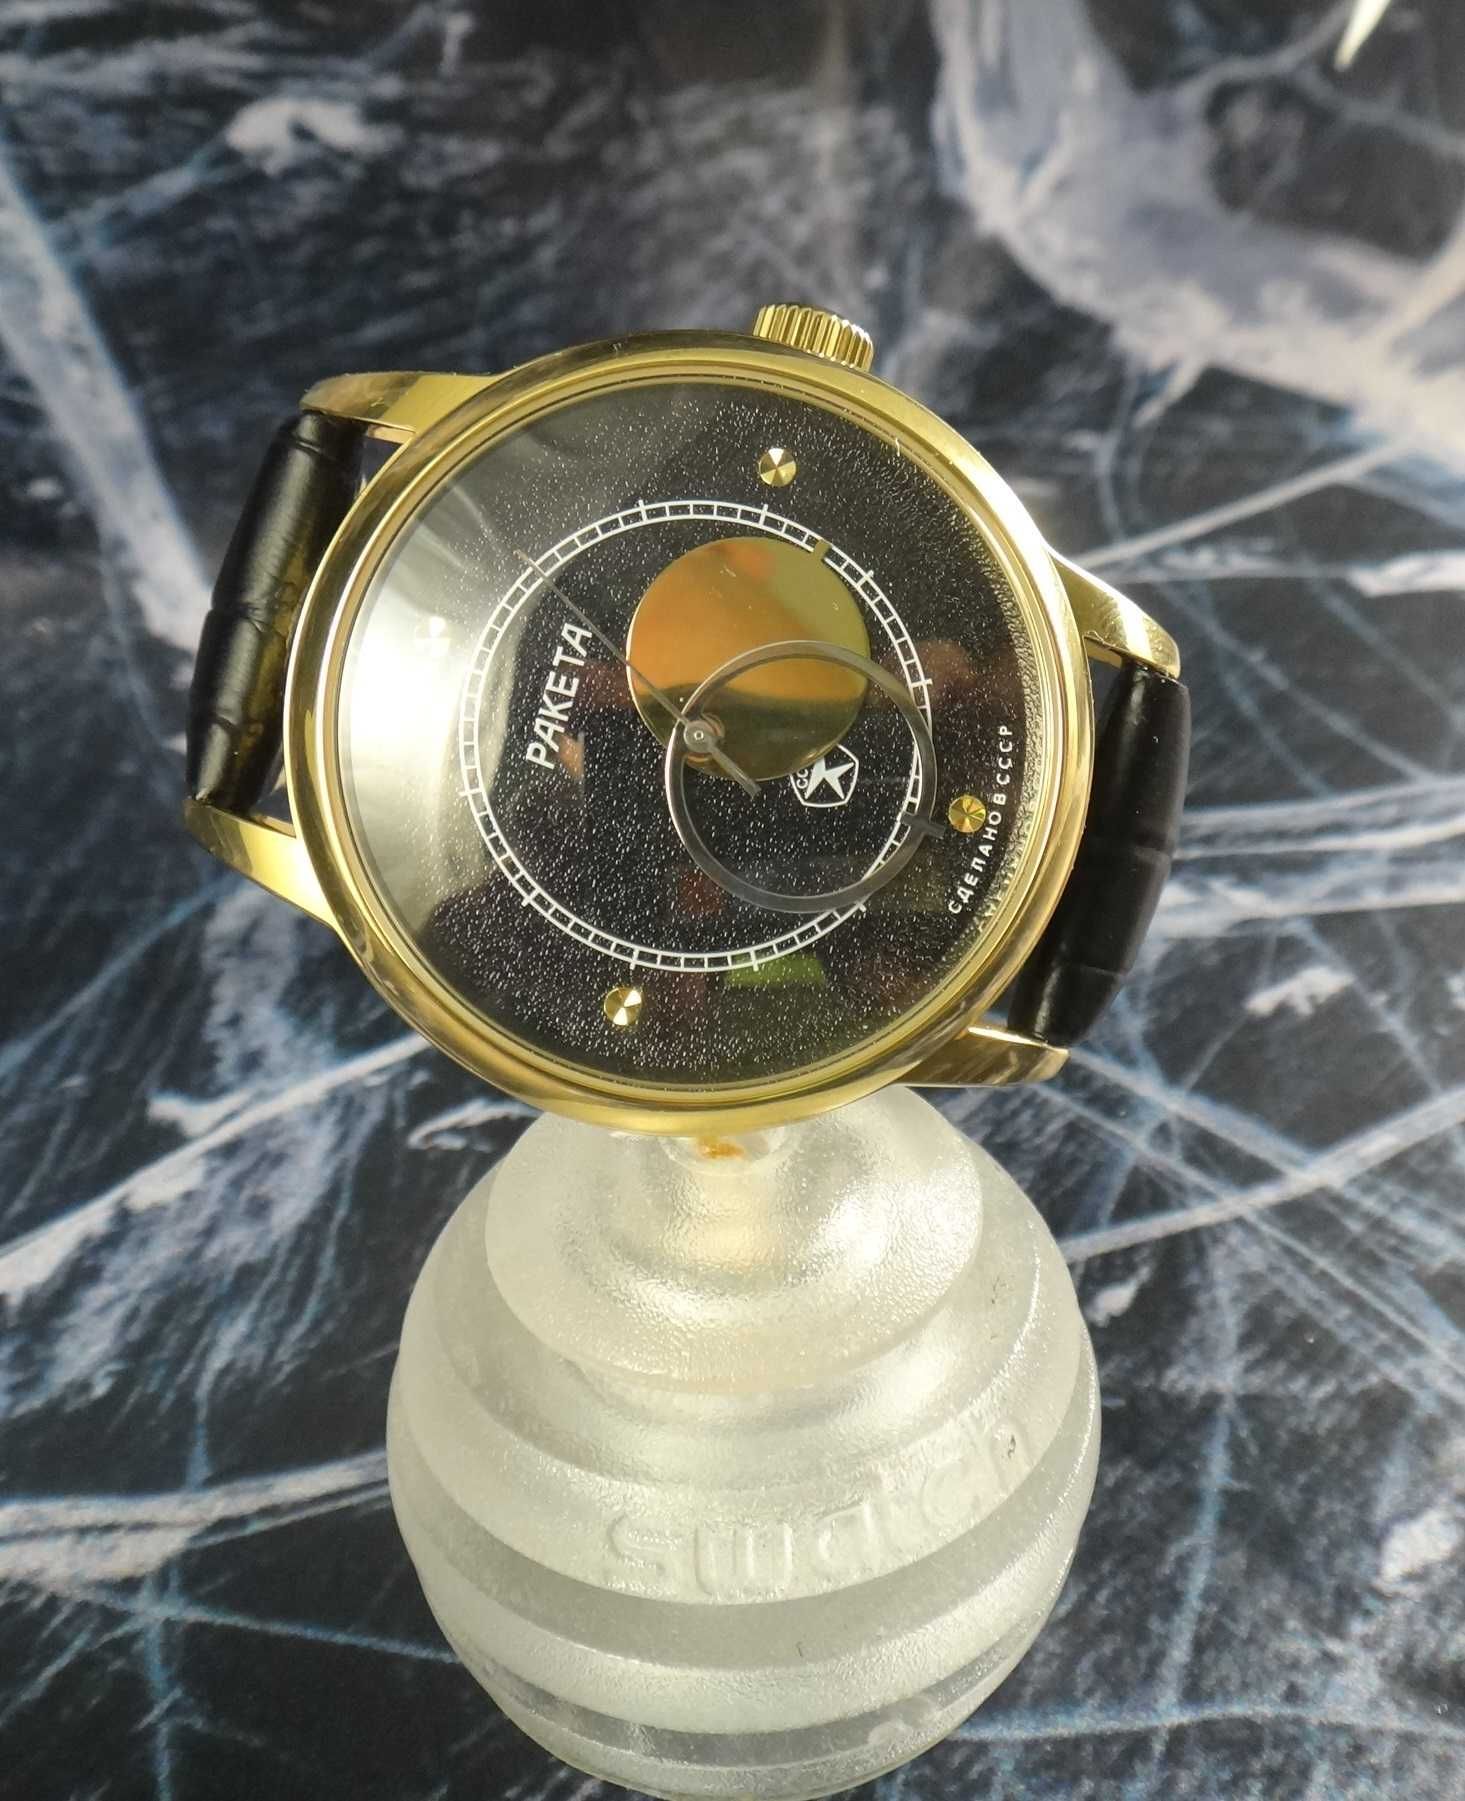 Часы Ракета Коперник винтажные механические Обслужены часовым